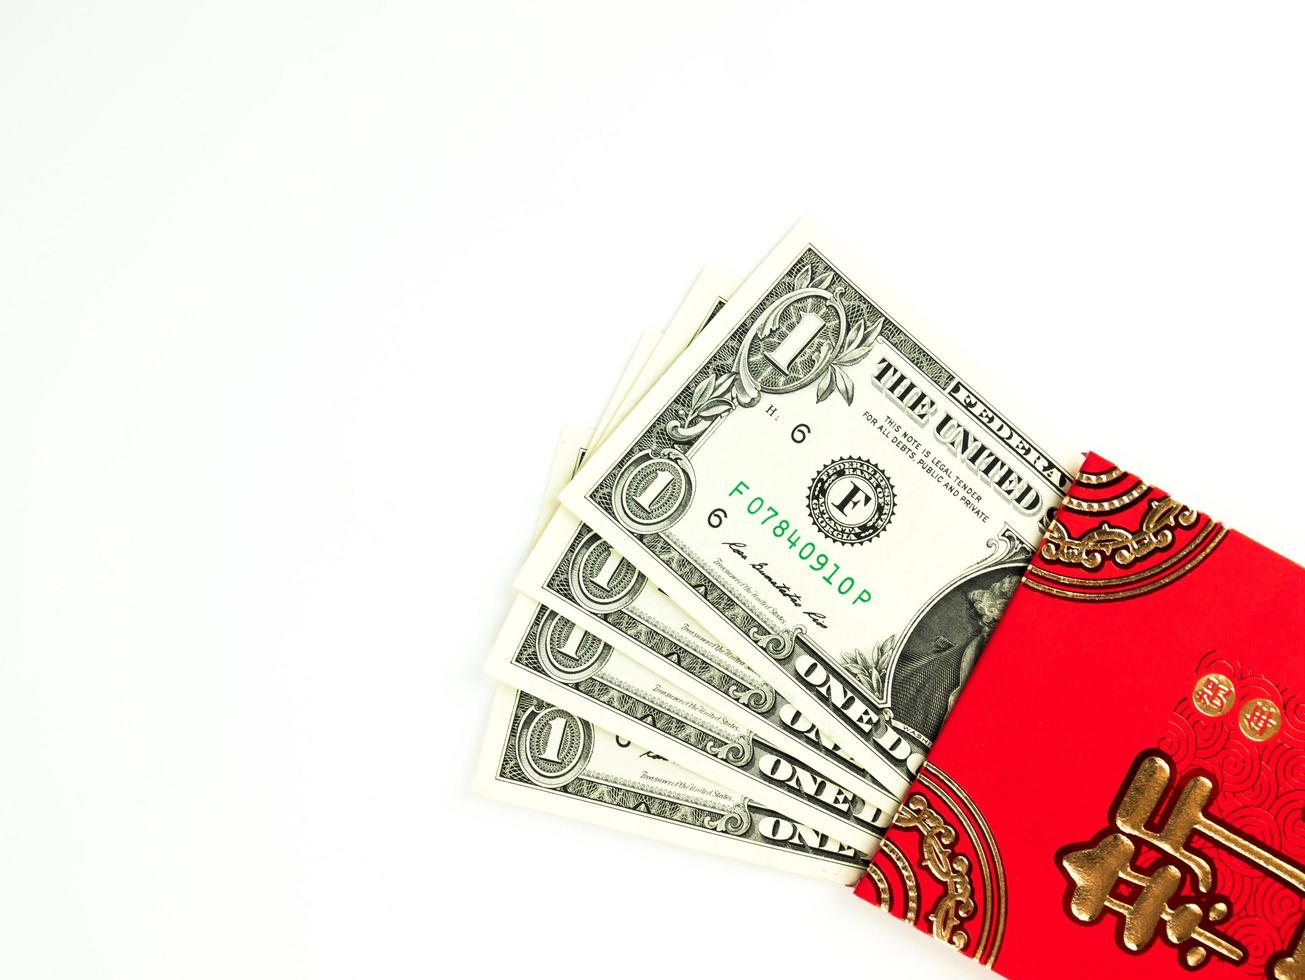 envelope vermelho isolado no fundo branco com dinheiro do dólar para o presente ano novo chinês. texto chinês no envelope significa feliz ano novo chinês foto